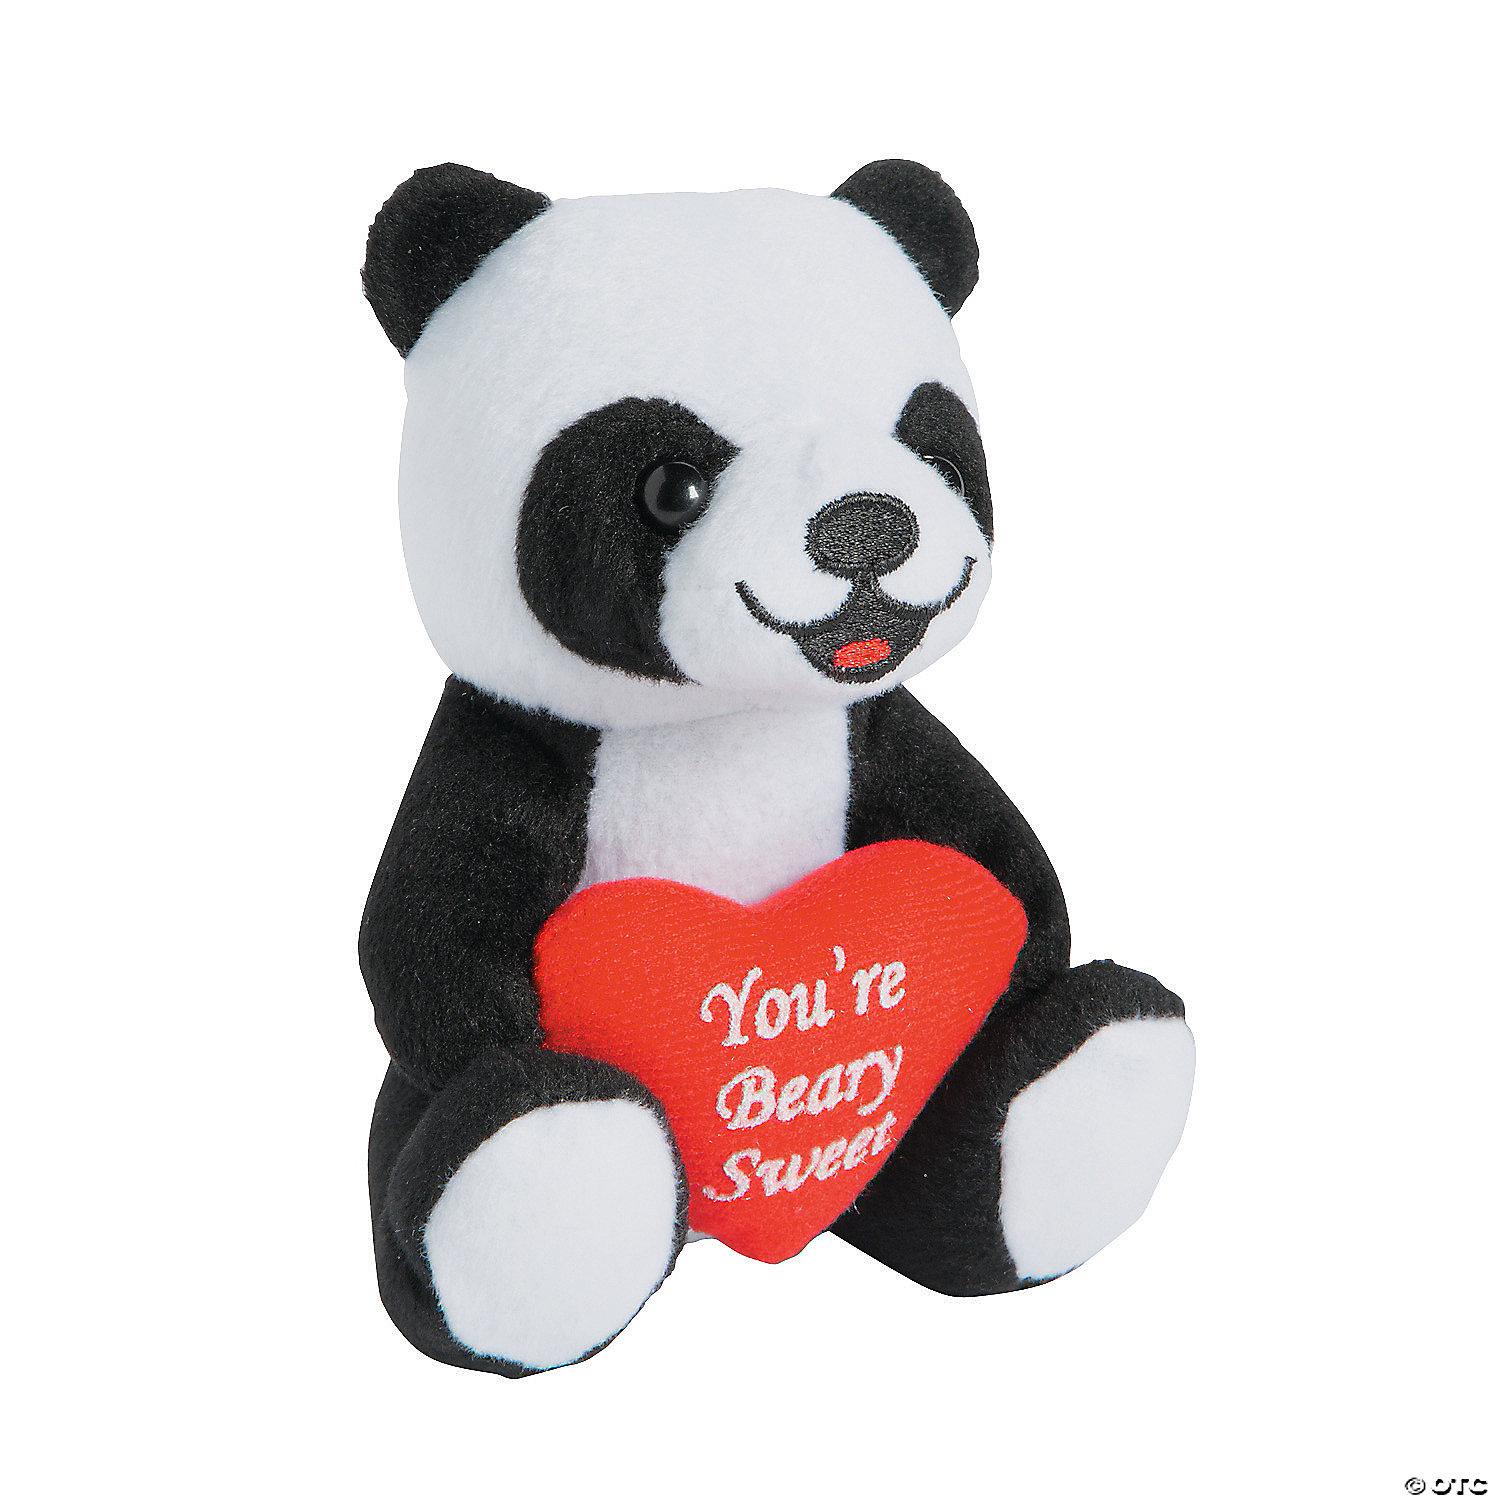 Brand New Hug Fun 11 in Round Animal Panda White Plush Toy Gift Valentine's Day 